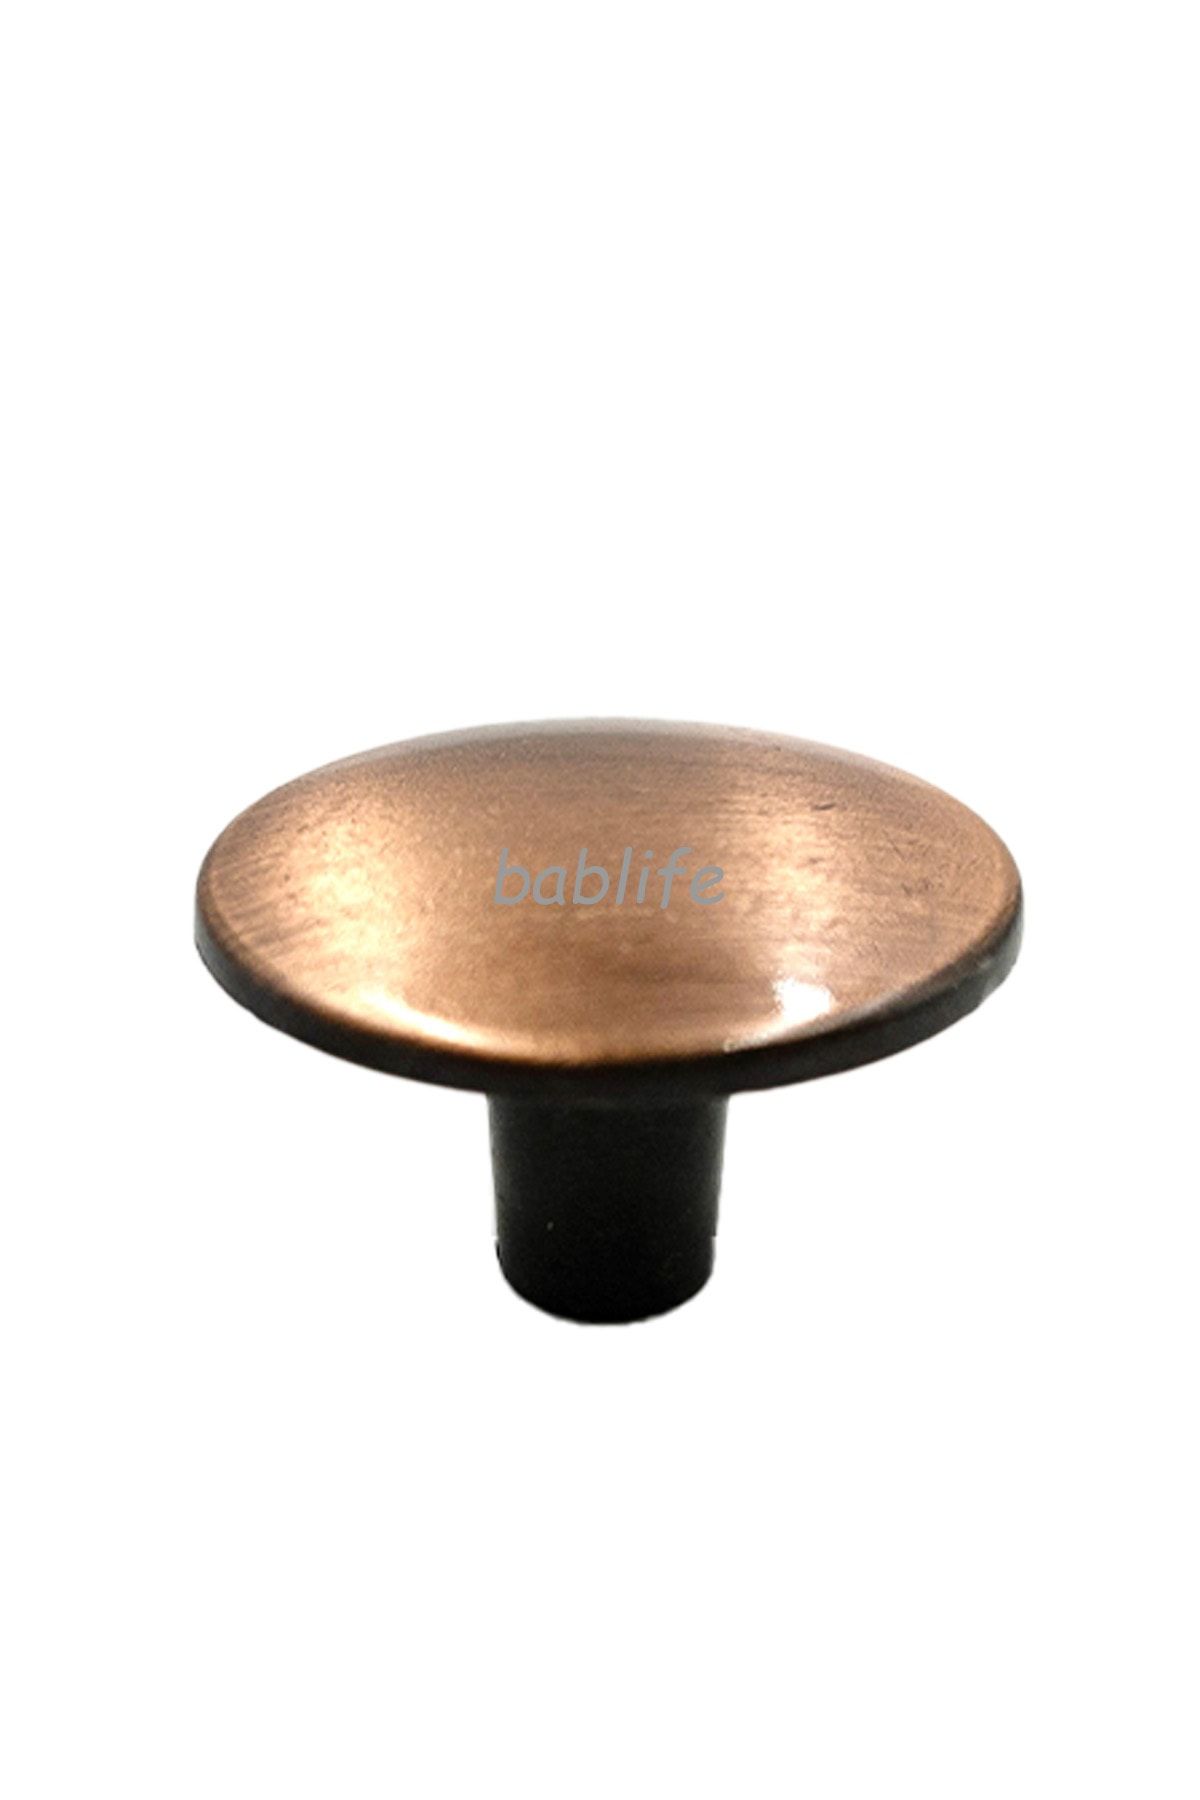 bablife Mantar Düğme Antik Bakır 35mm Çapında Metal Lüks Çapında Çekmece Dolap Mobilya Kulpları